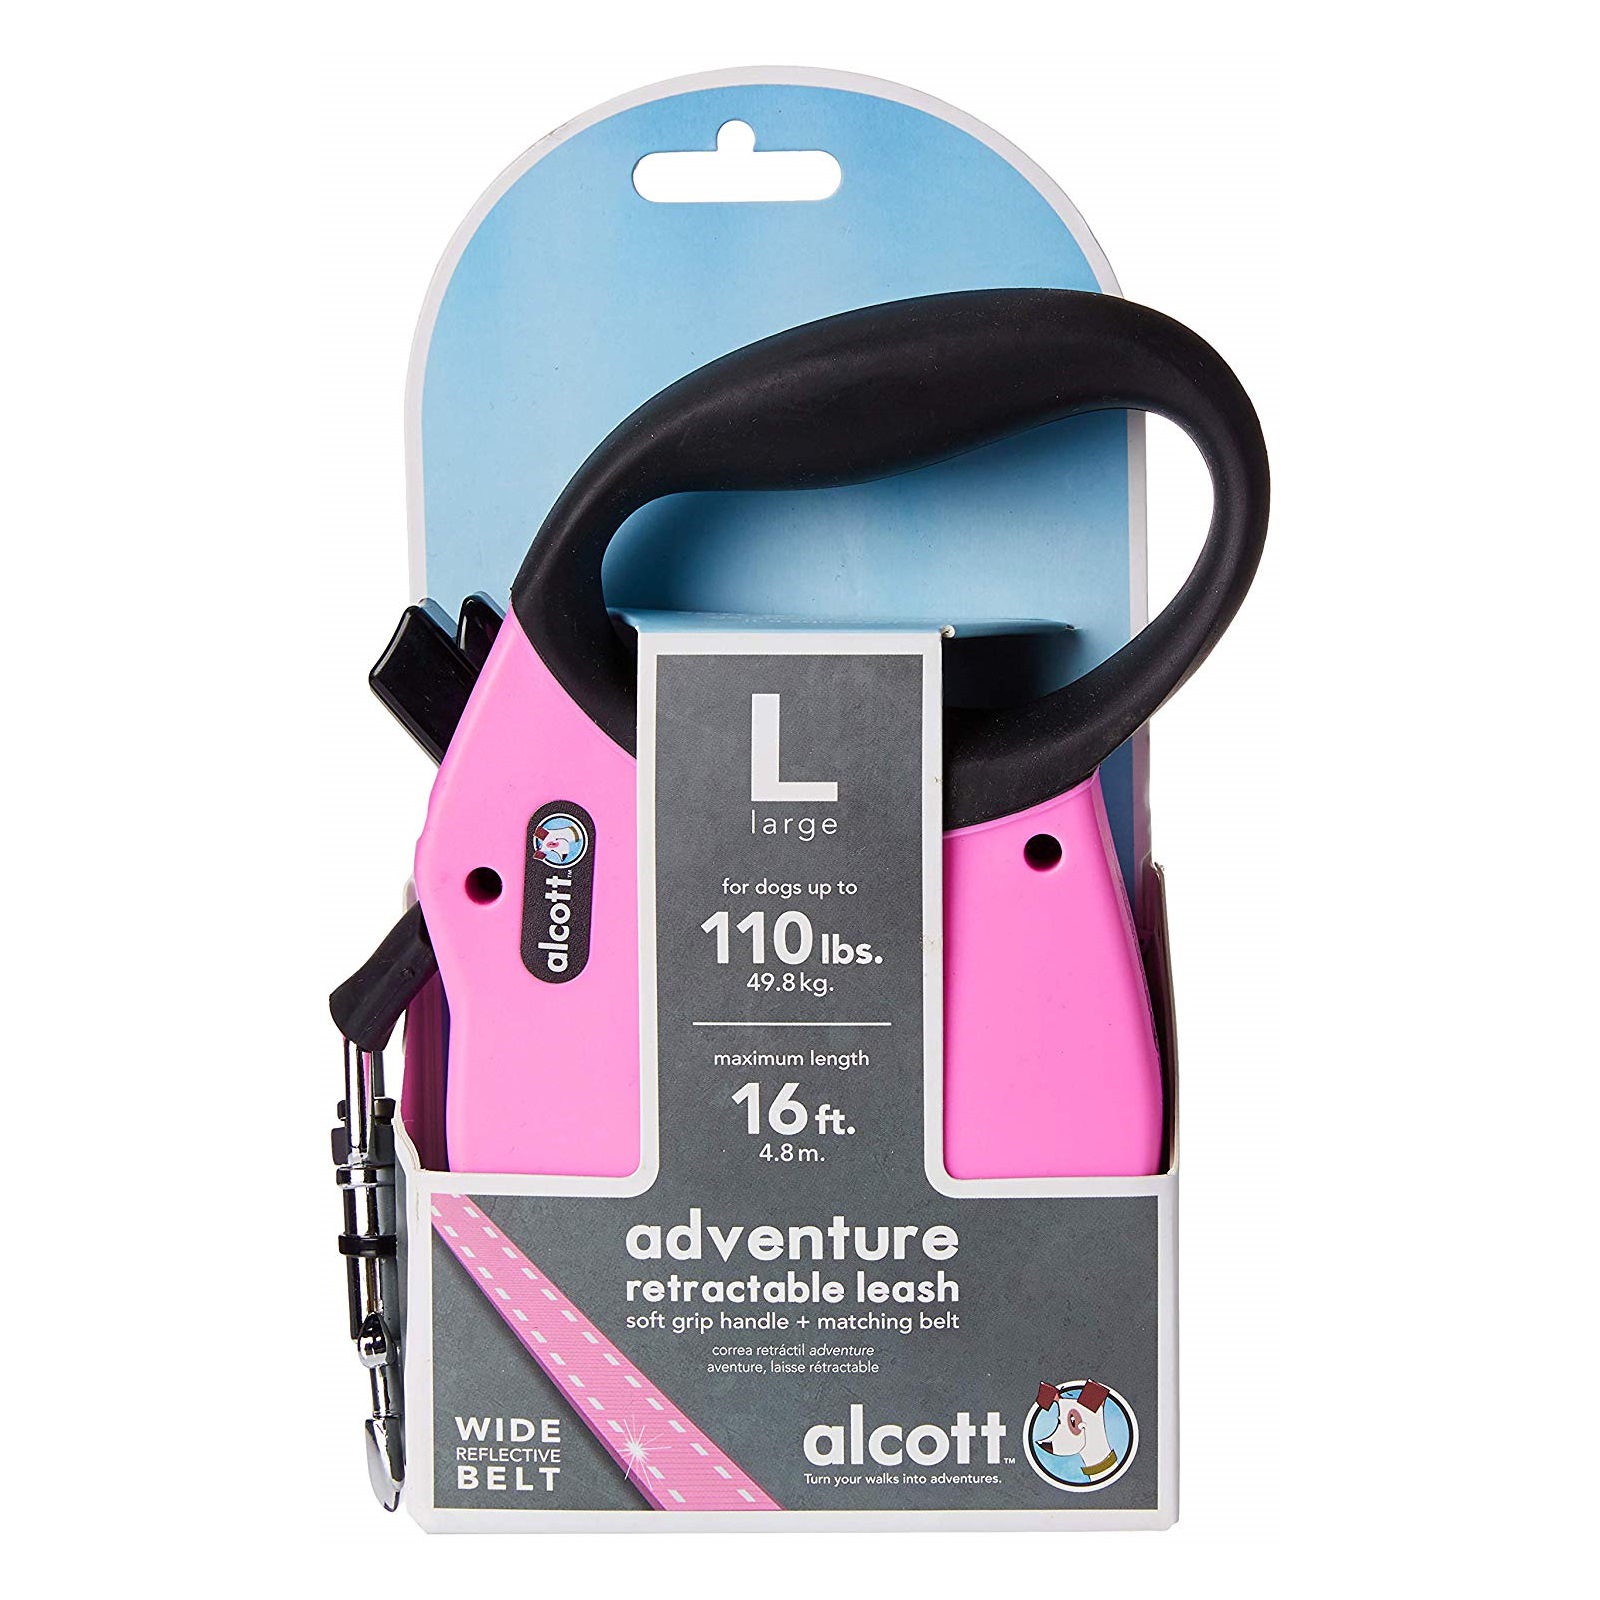 Alcott Flexi-ble Adventure Retractable Tape Dog Leash - Pink image 4